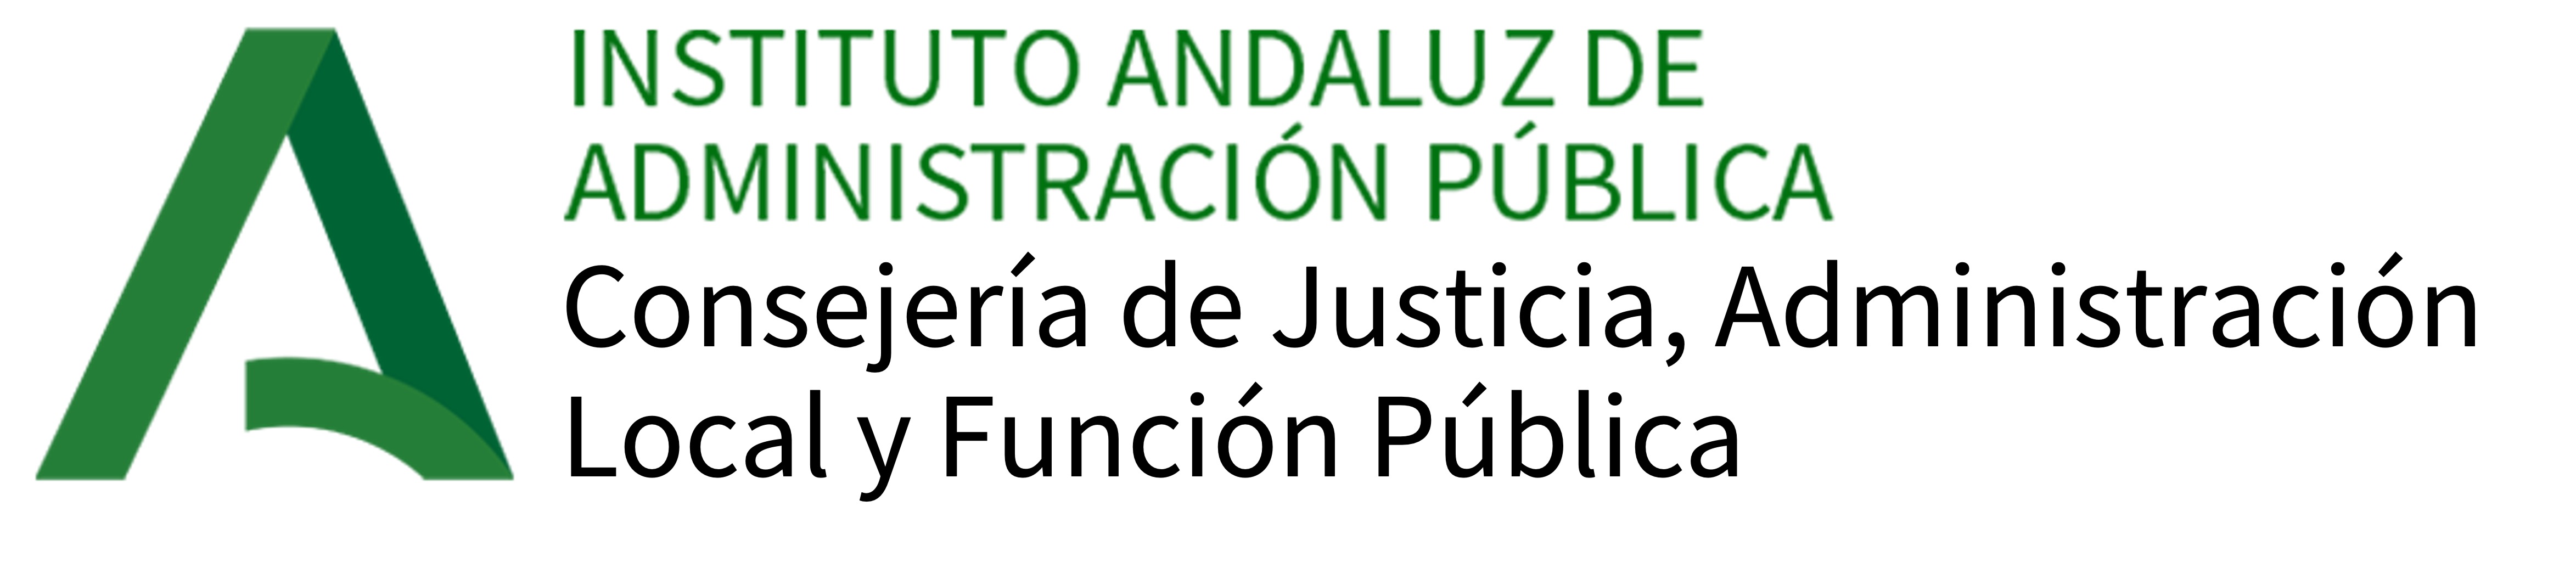 Plataforma de Formación On line - Instituto Andaluz de Administración Pública